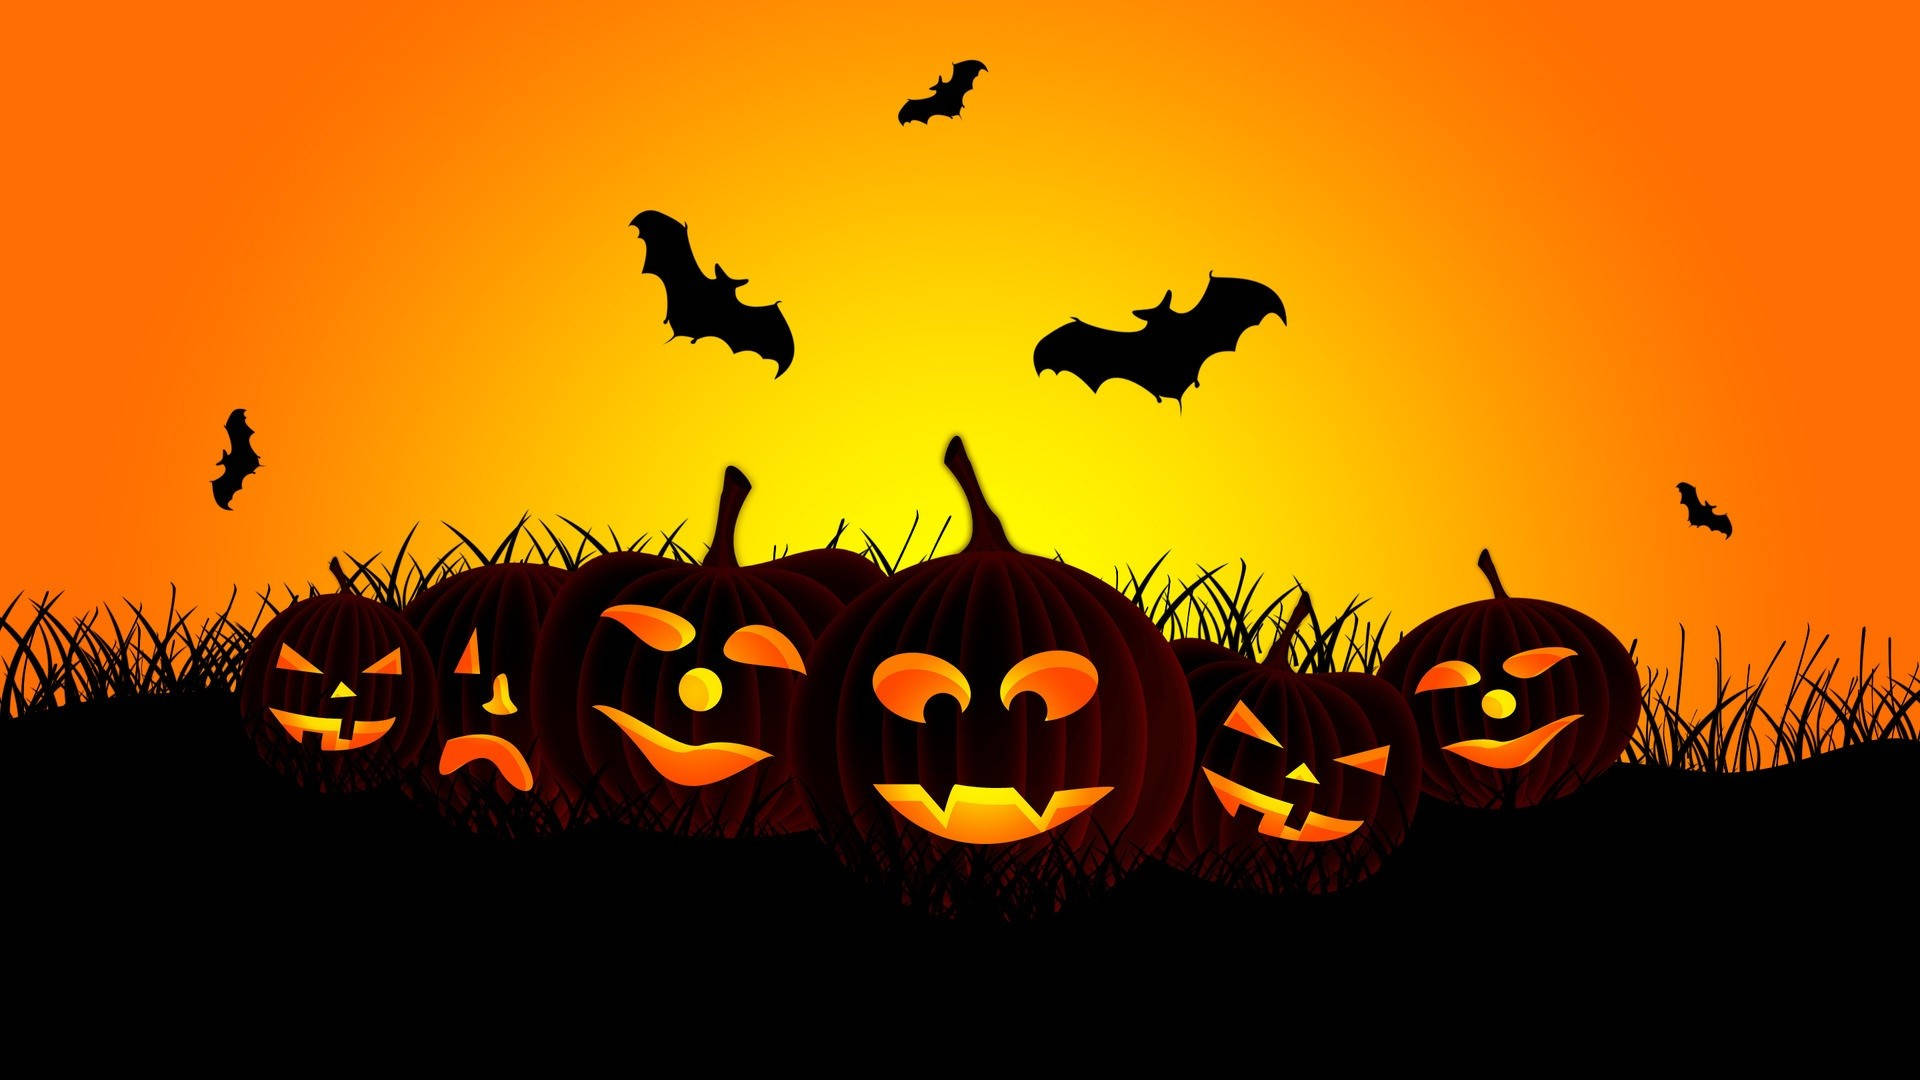 Download Halloween Jack O Lanterns Tumblr Desktop Wallpaper ...